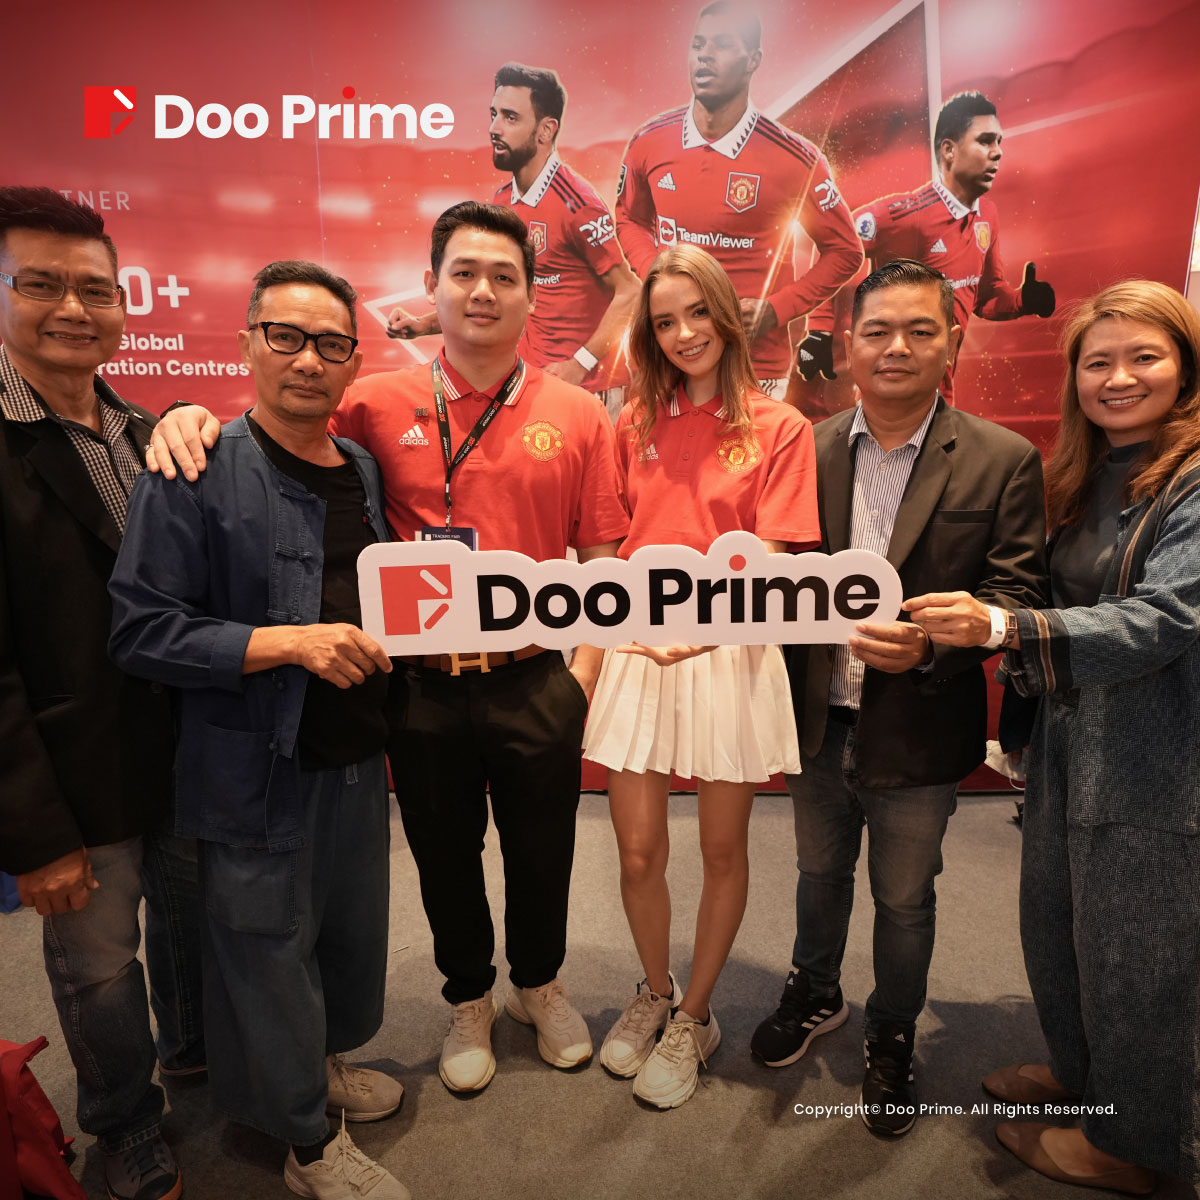 Traders Fair Thailand đã kết thúc thành công rực rỡ! - Doo Prime